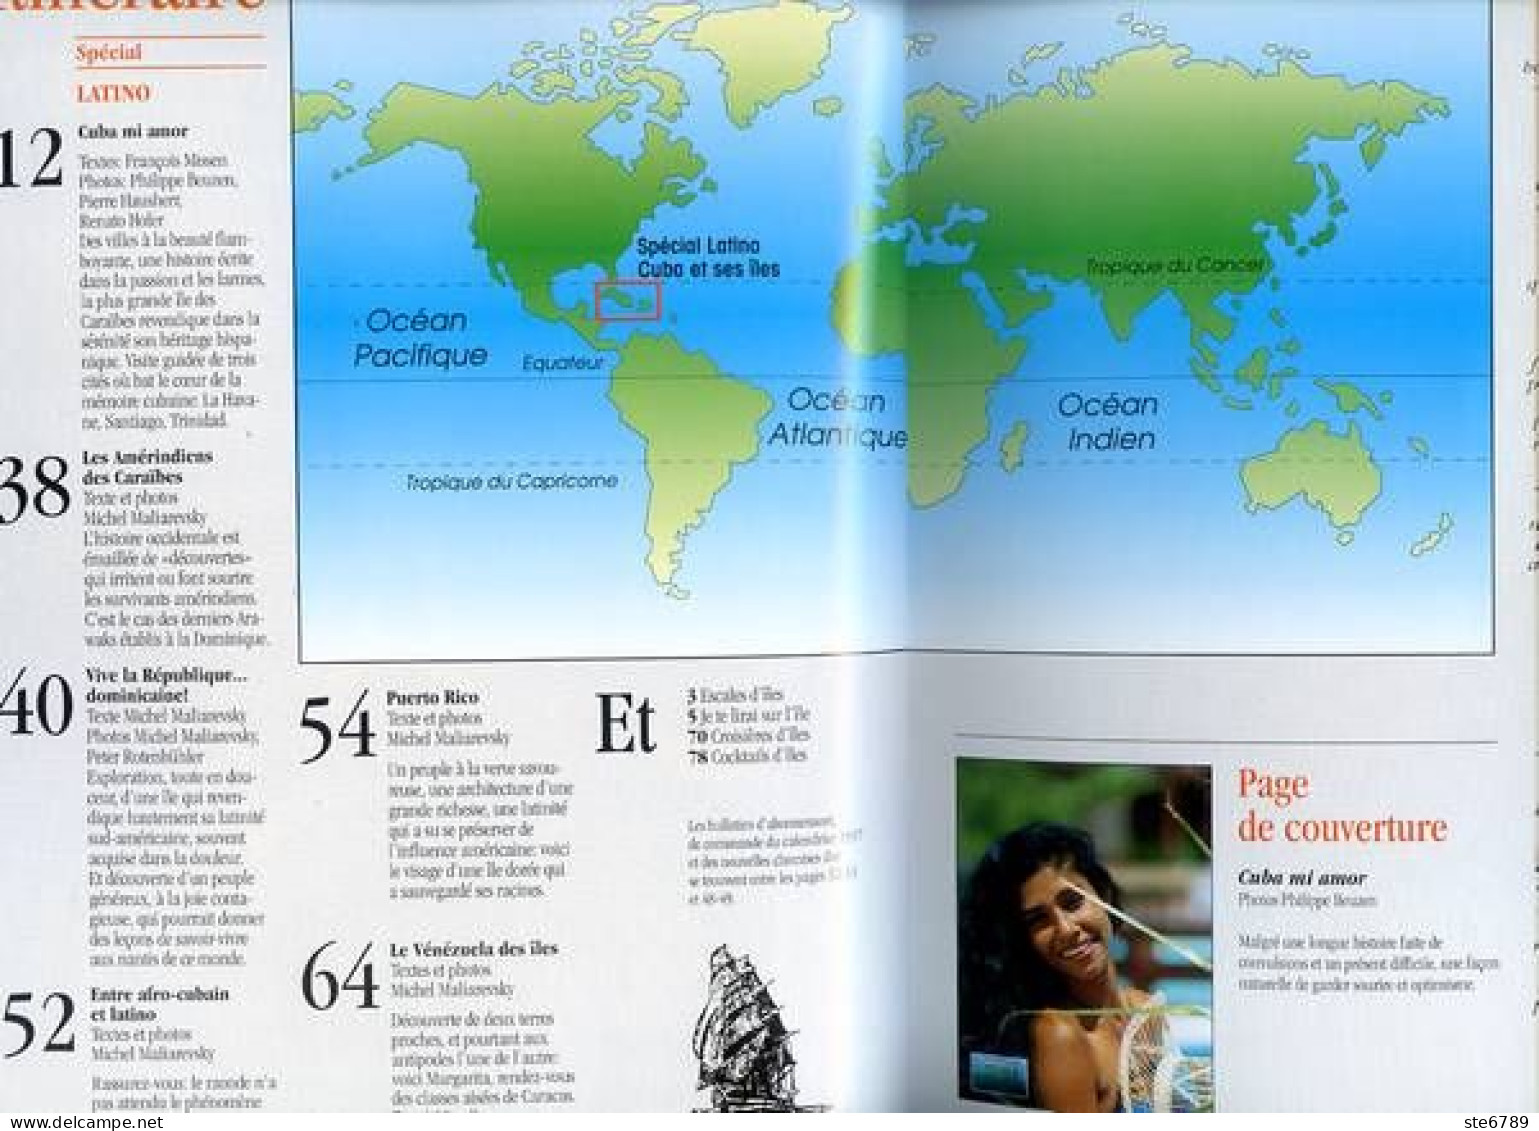 ILES MAGAZINE N° 48 Cuba Special Latino , Puerto Rico , Los Roques , Iles Colombie , Republique Dominicaine - Géographie